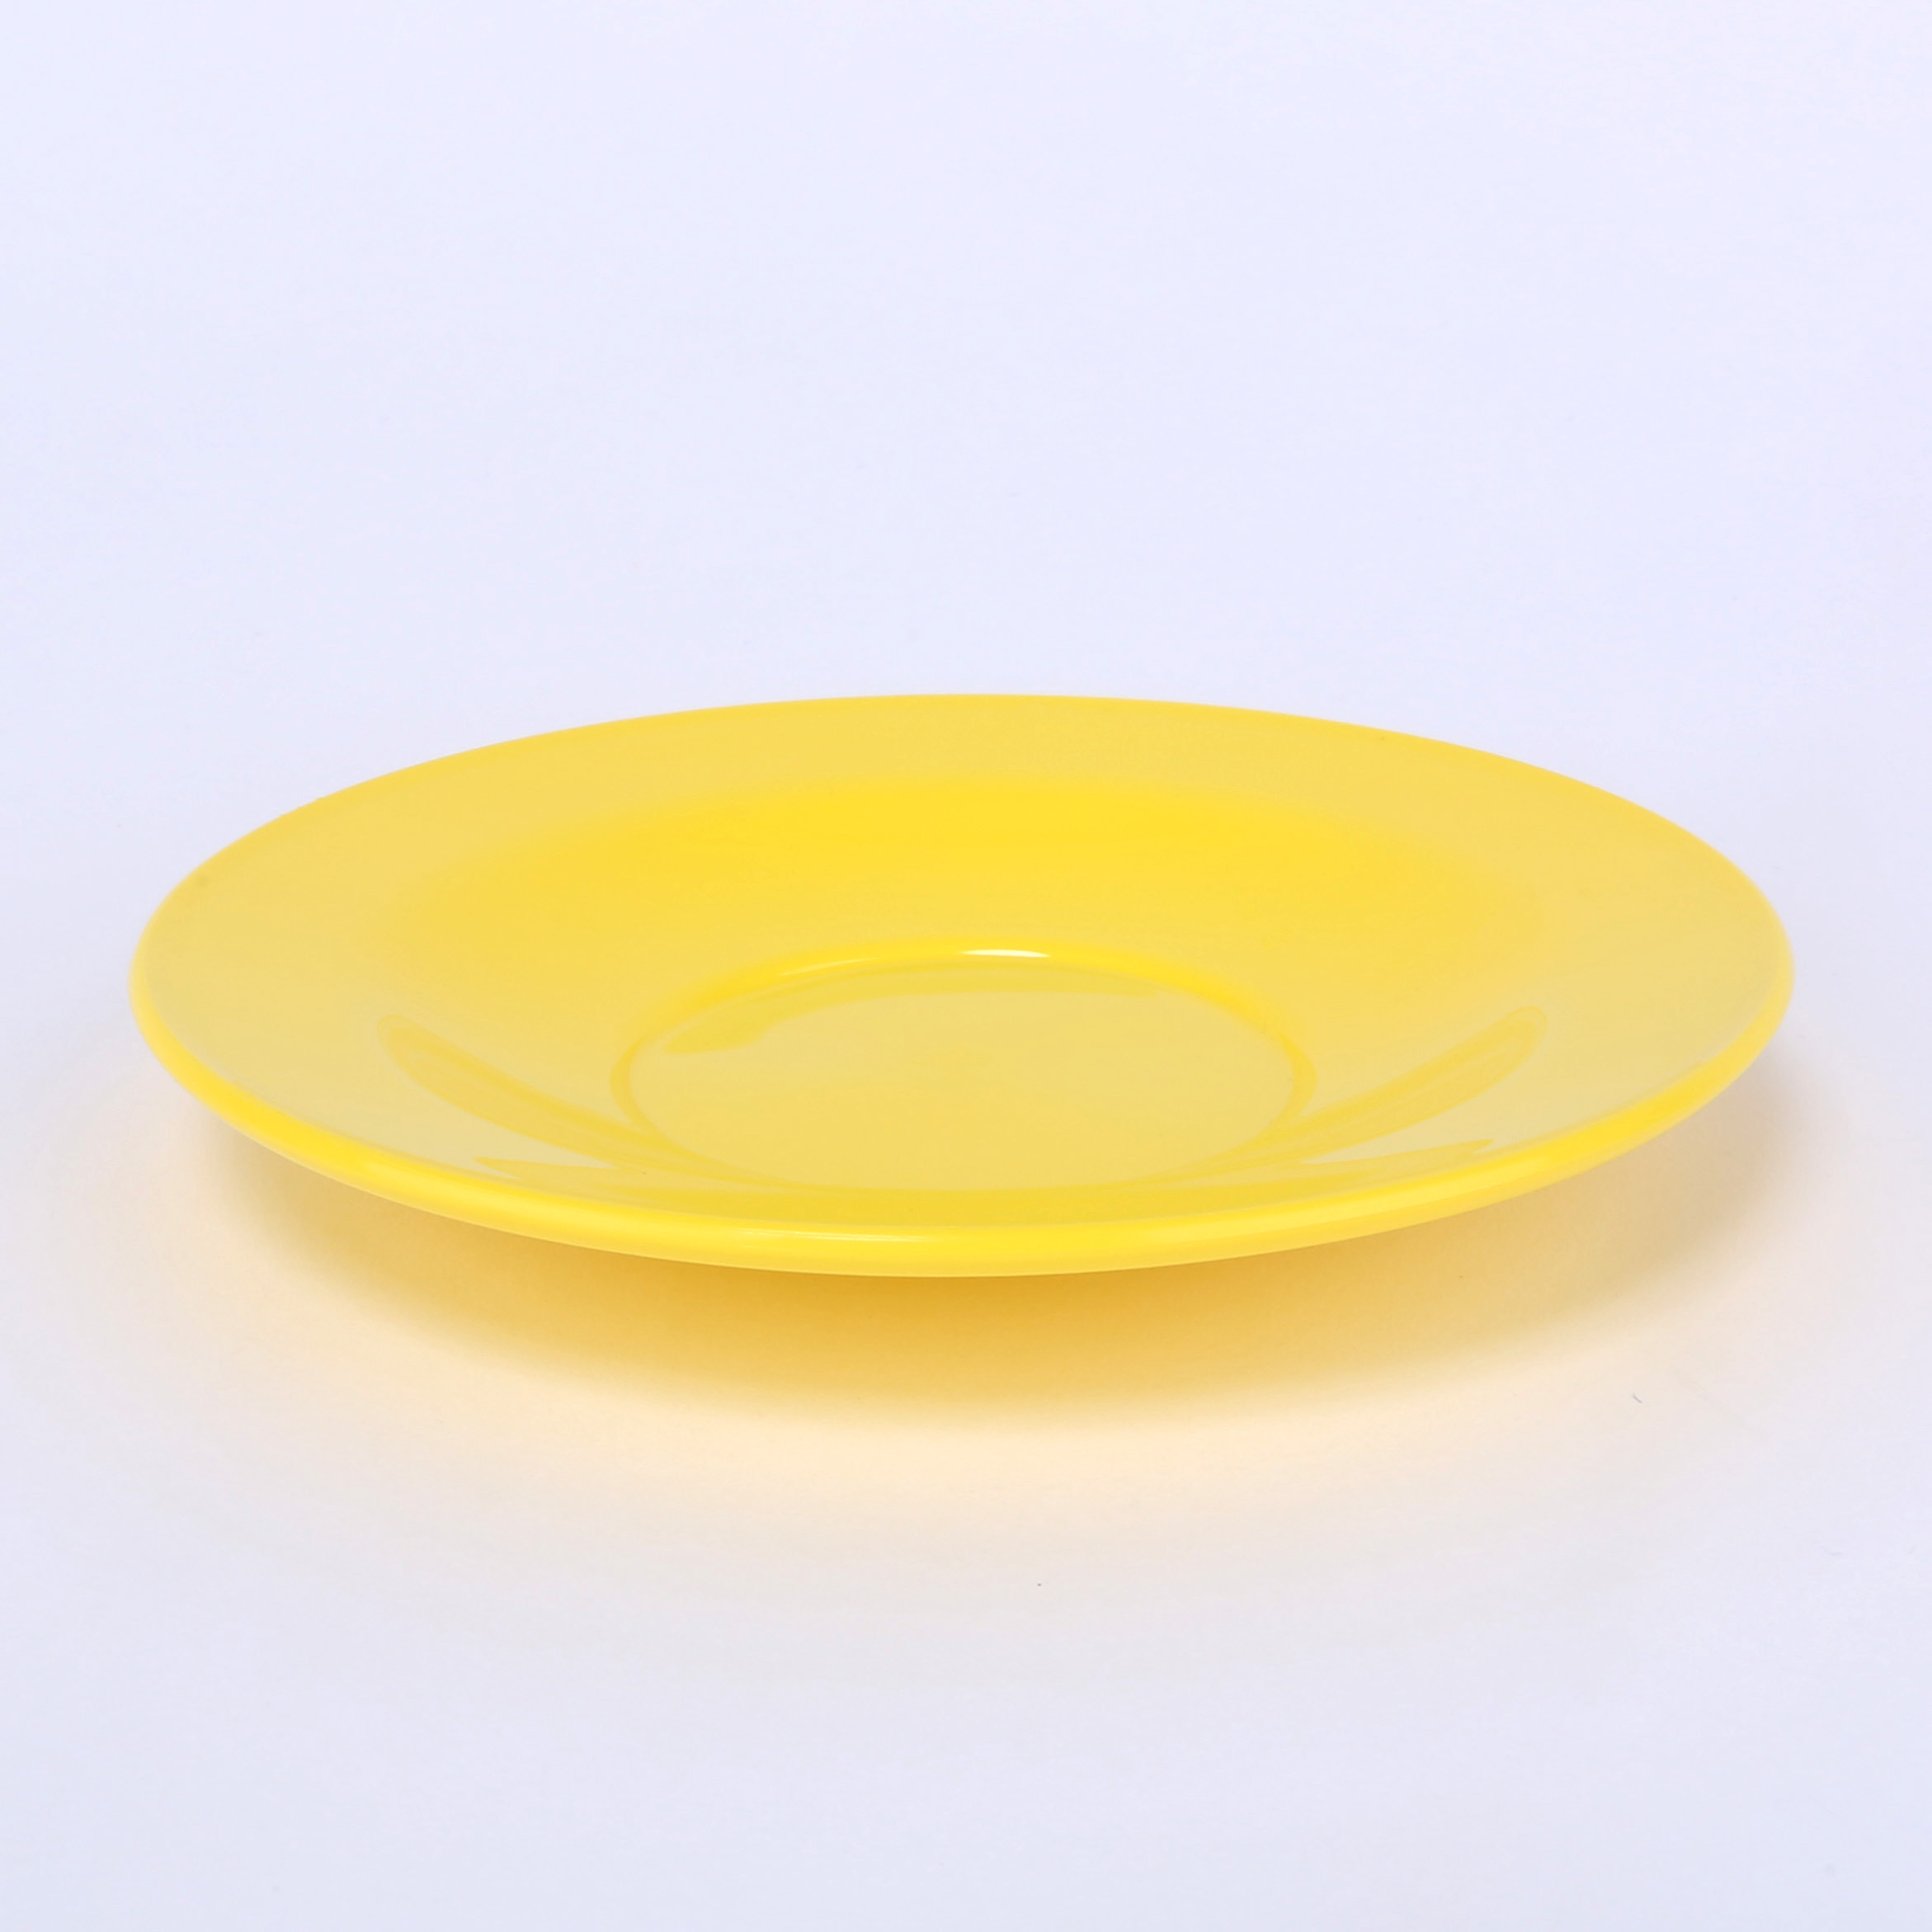 vaLon Zephyr Untertasse 13,5 cm aus schadstofffreiem Kunststoff in der Farbe sonnengelb.